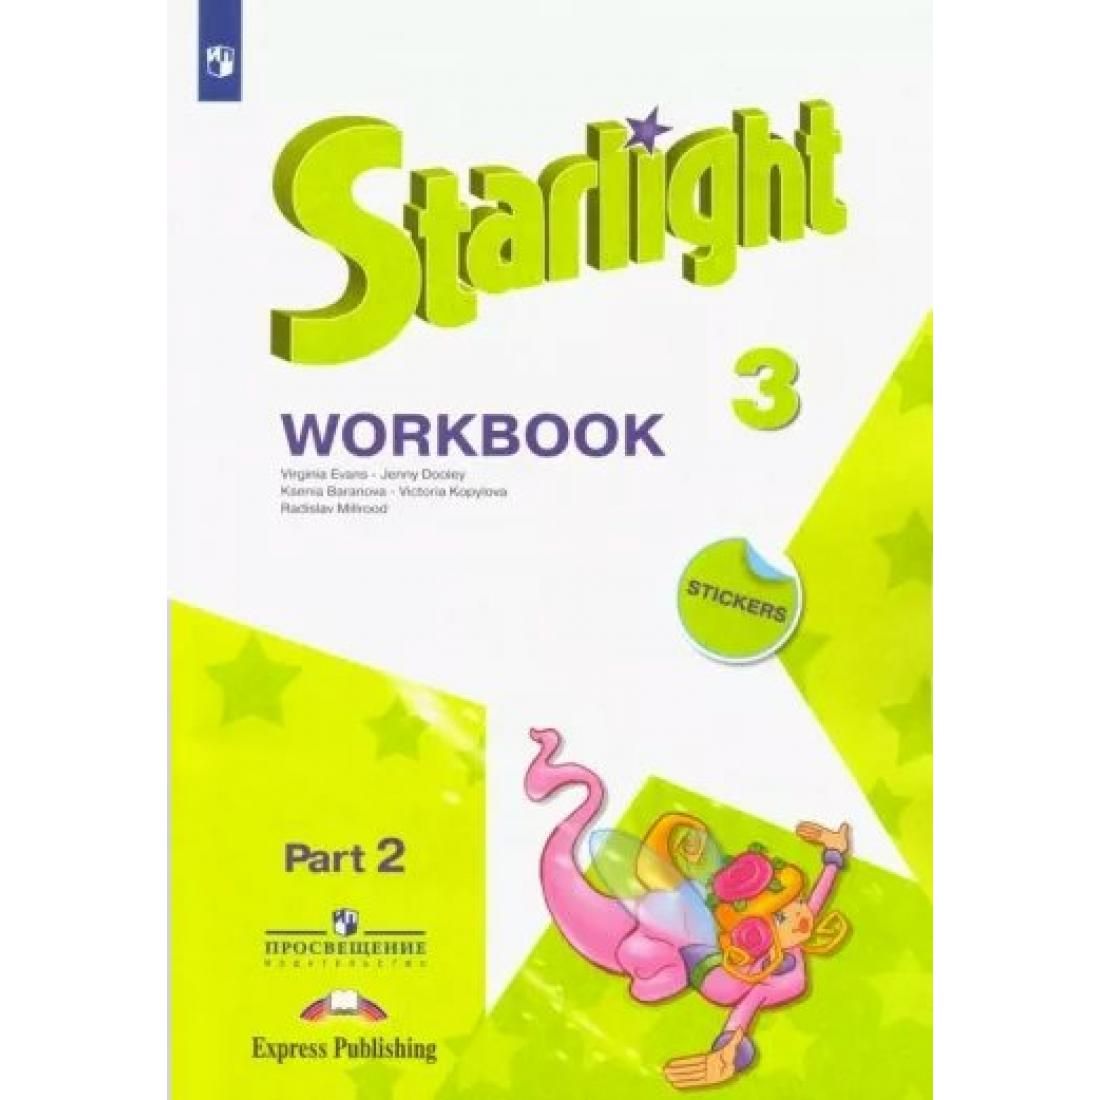 Учебник по английскому языку 7 звездный английский. Starlight 3 Workbook 2 часть. Workbook 3 класс Starlight 2 часть. Starlight 2 Workbook Part 2. Starlight Workbook 2 класс 2 часть.